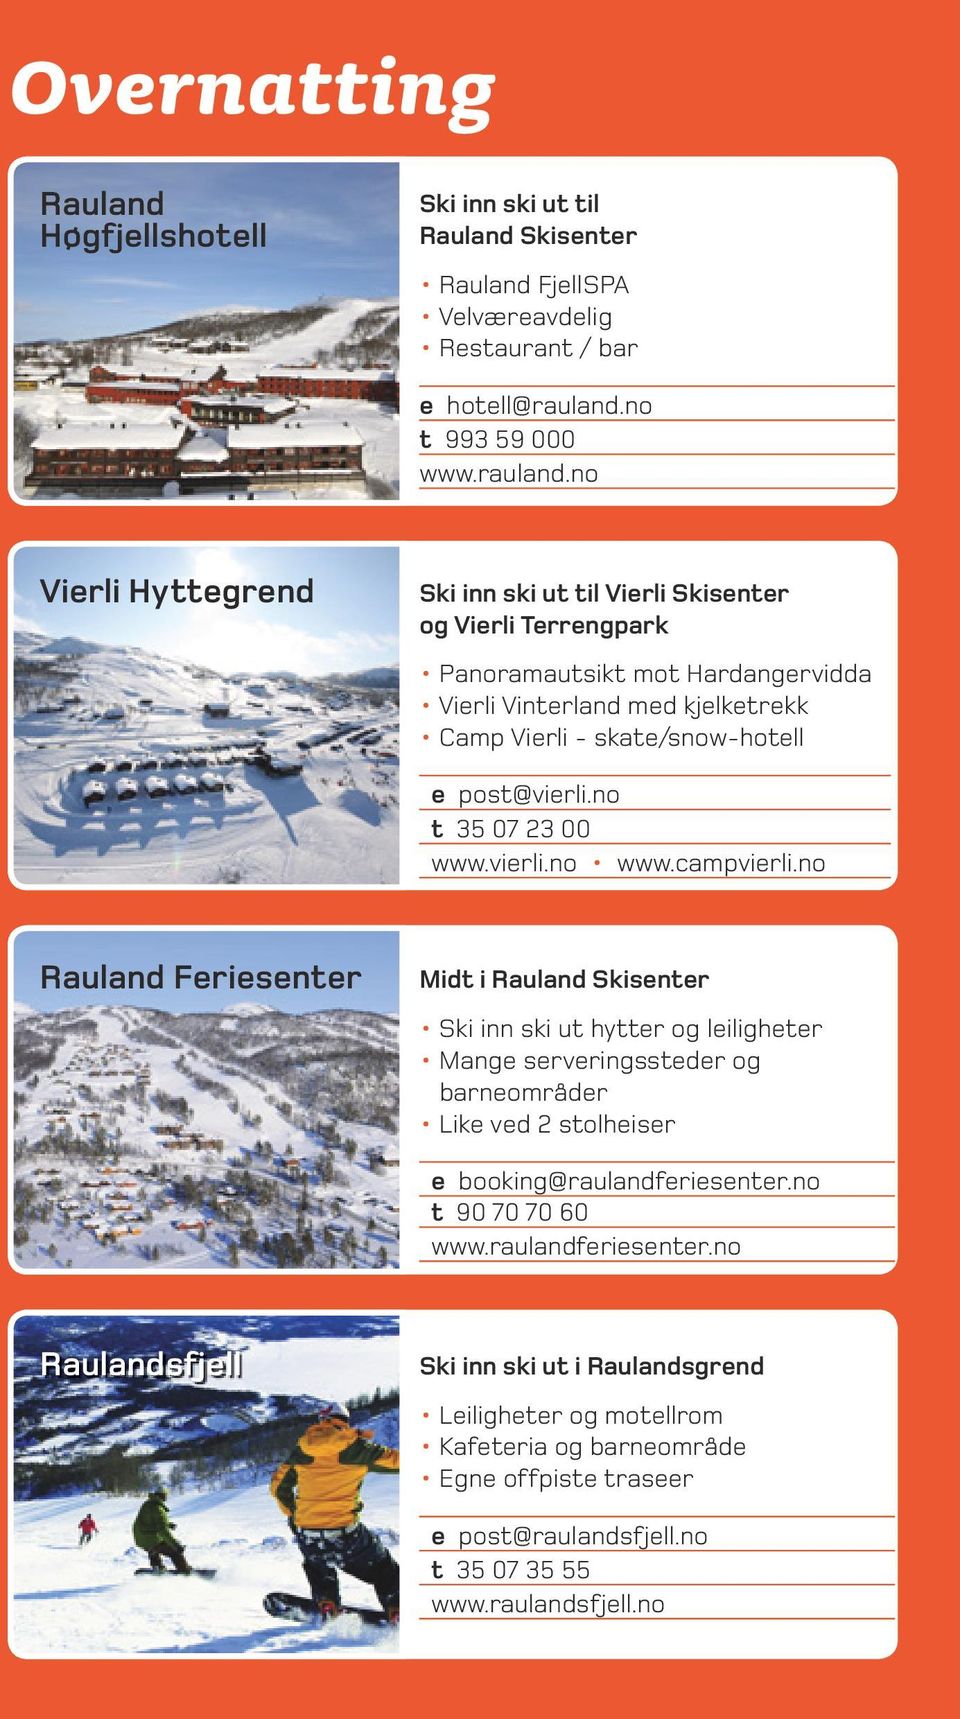 no Vierli Hyttegrend Ski inn ski ut til Vierli Skisenter og Vierli Terrengpark Panoramautsikt mot Hardangervidda Vierli Vinterland med kjelketrekk Camp Vierli - skate/snow-hotell e post@vierli.